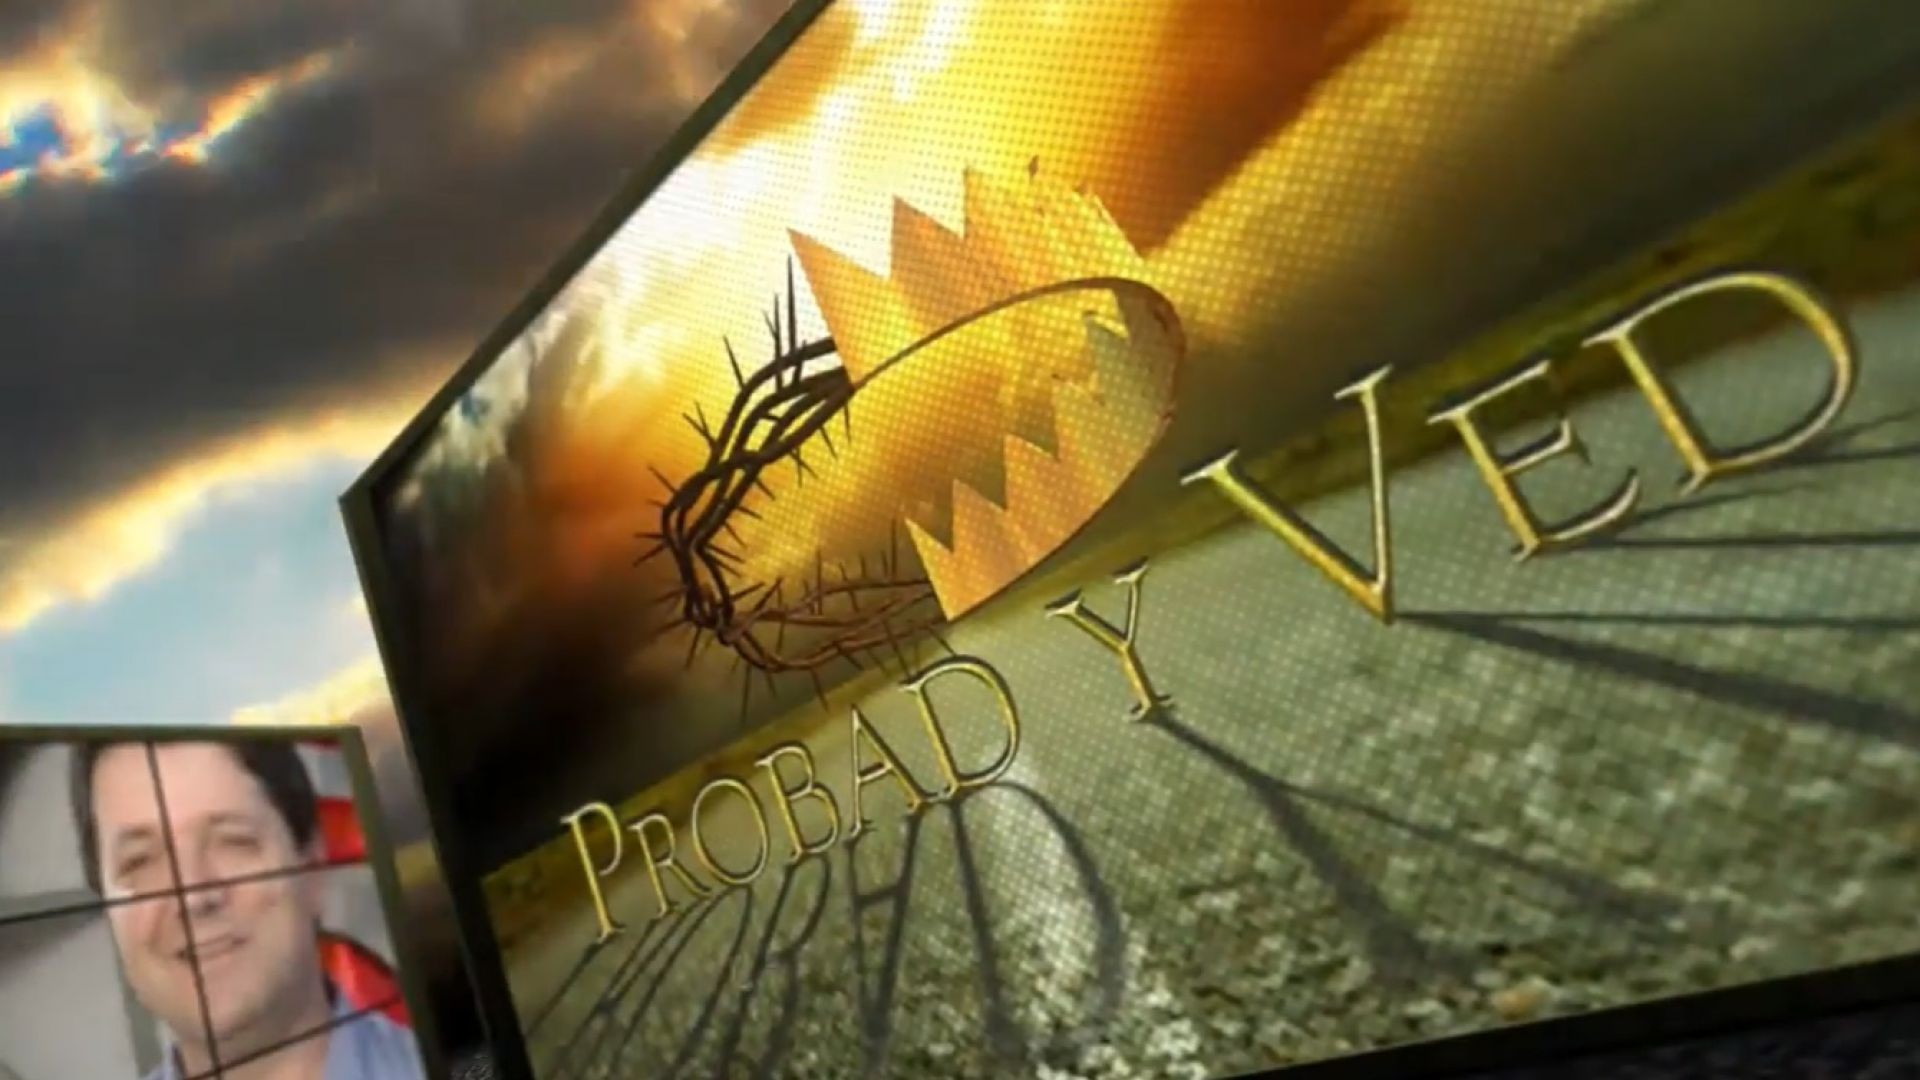 Probad y Ved 2012 - El sueño  de Dios